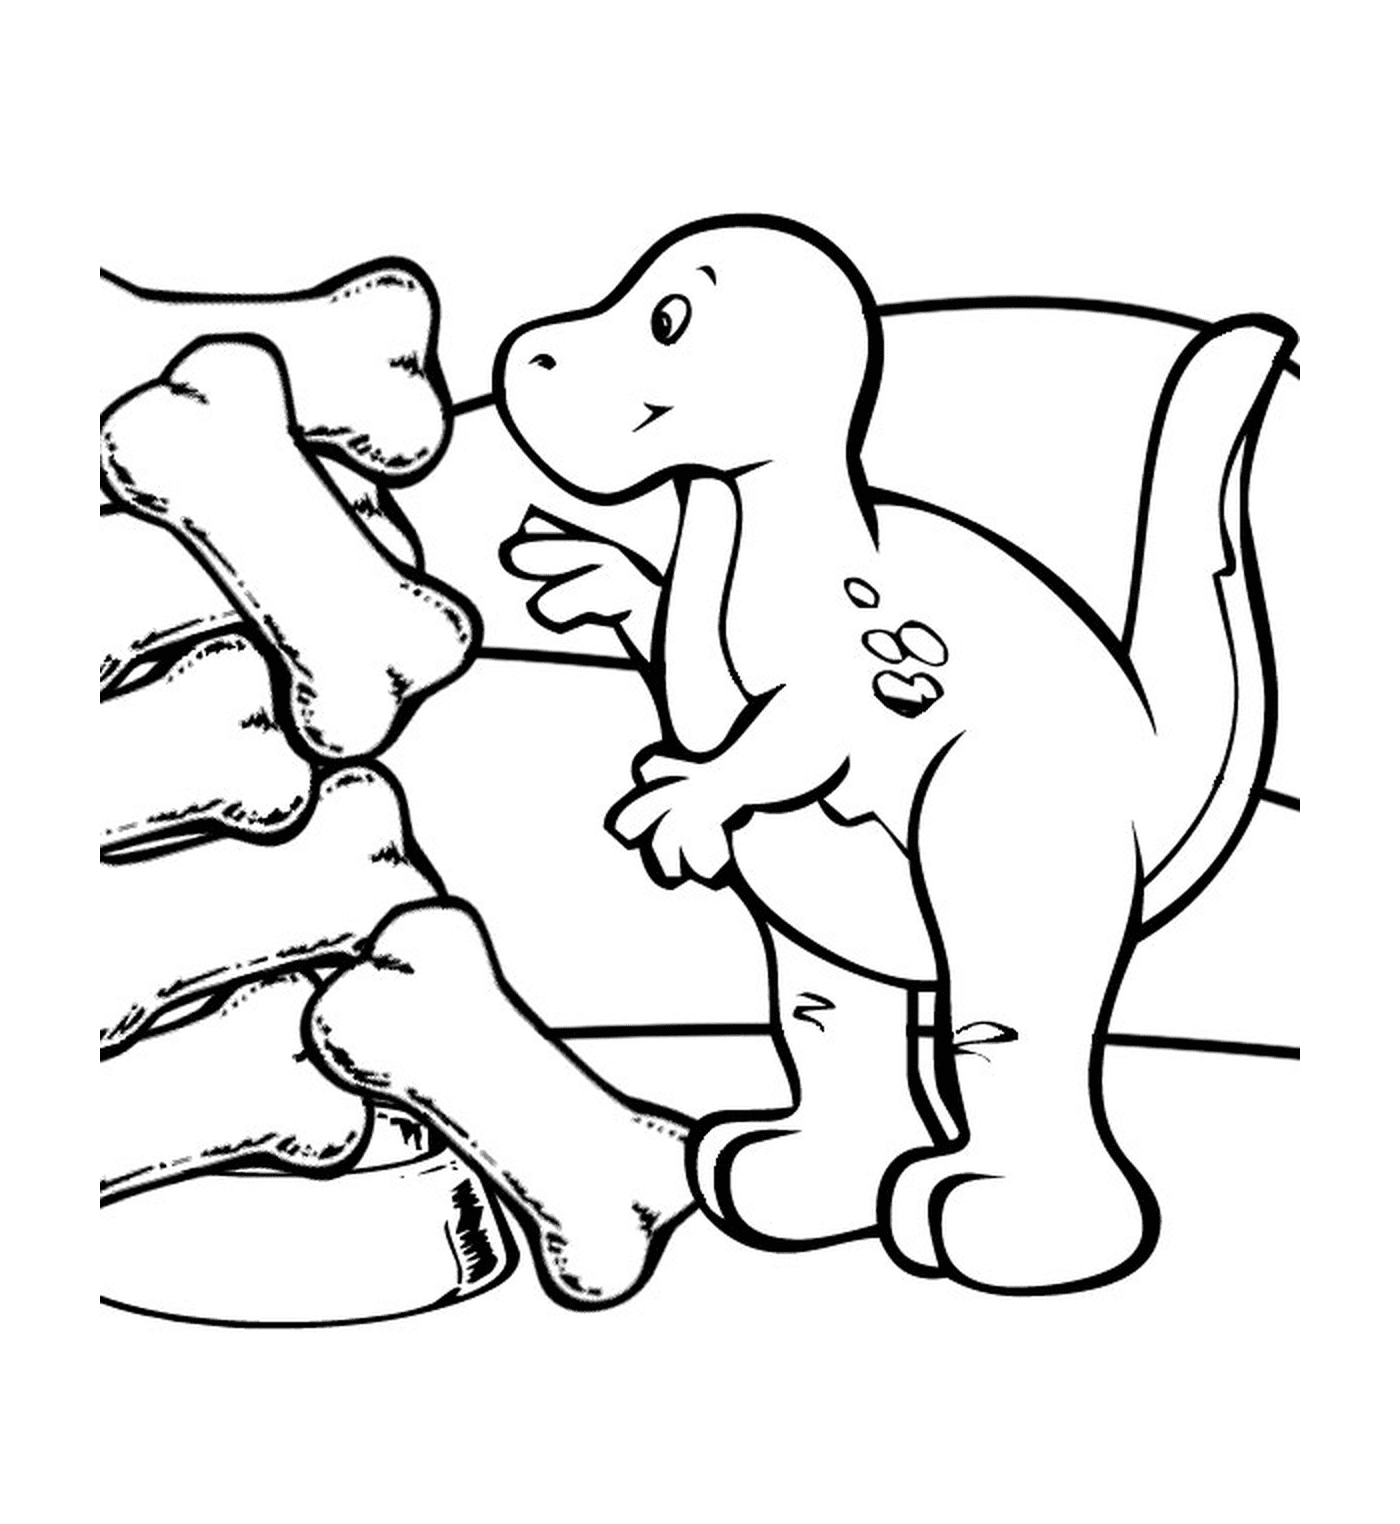   Dinosaure à côté d'os fossilisés 